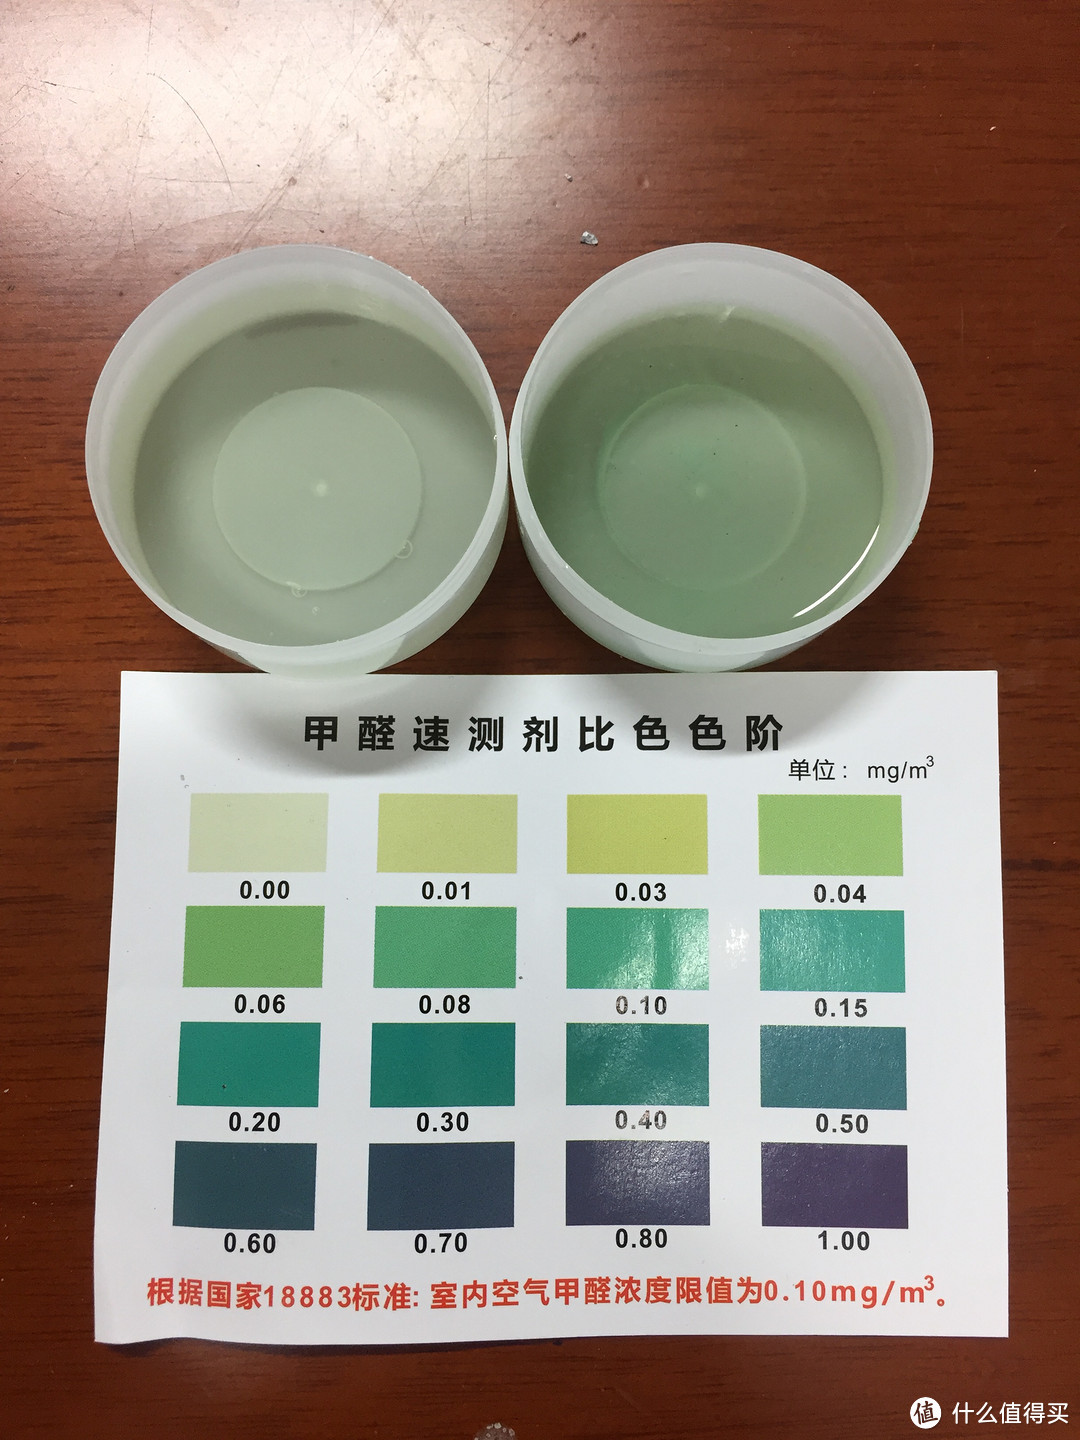 简单测评绿普达甲醛清除剂